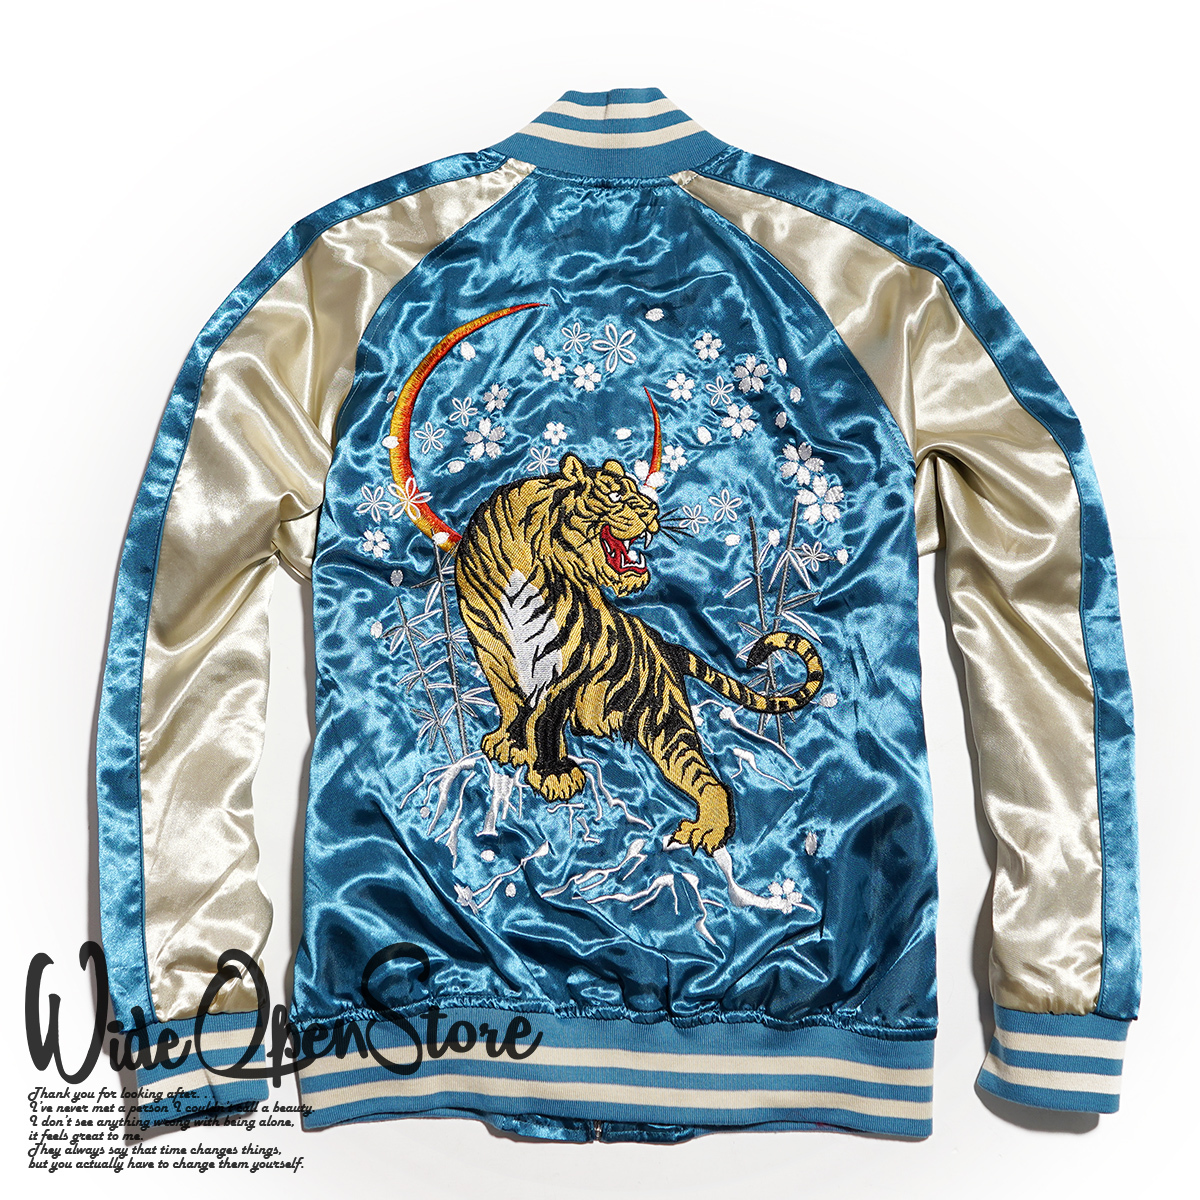 【新品】スカジャン スーベニアジャケット ■ 3Lサイズ / ブルー青 虎 タイガー ■ 和柄 刺繍 サテン SKAb960k_画像3